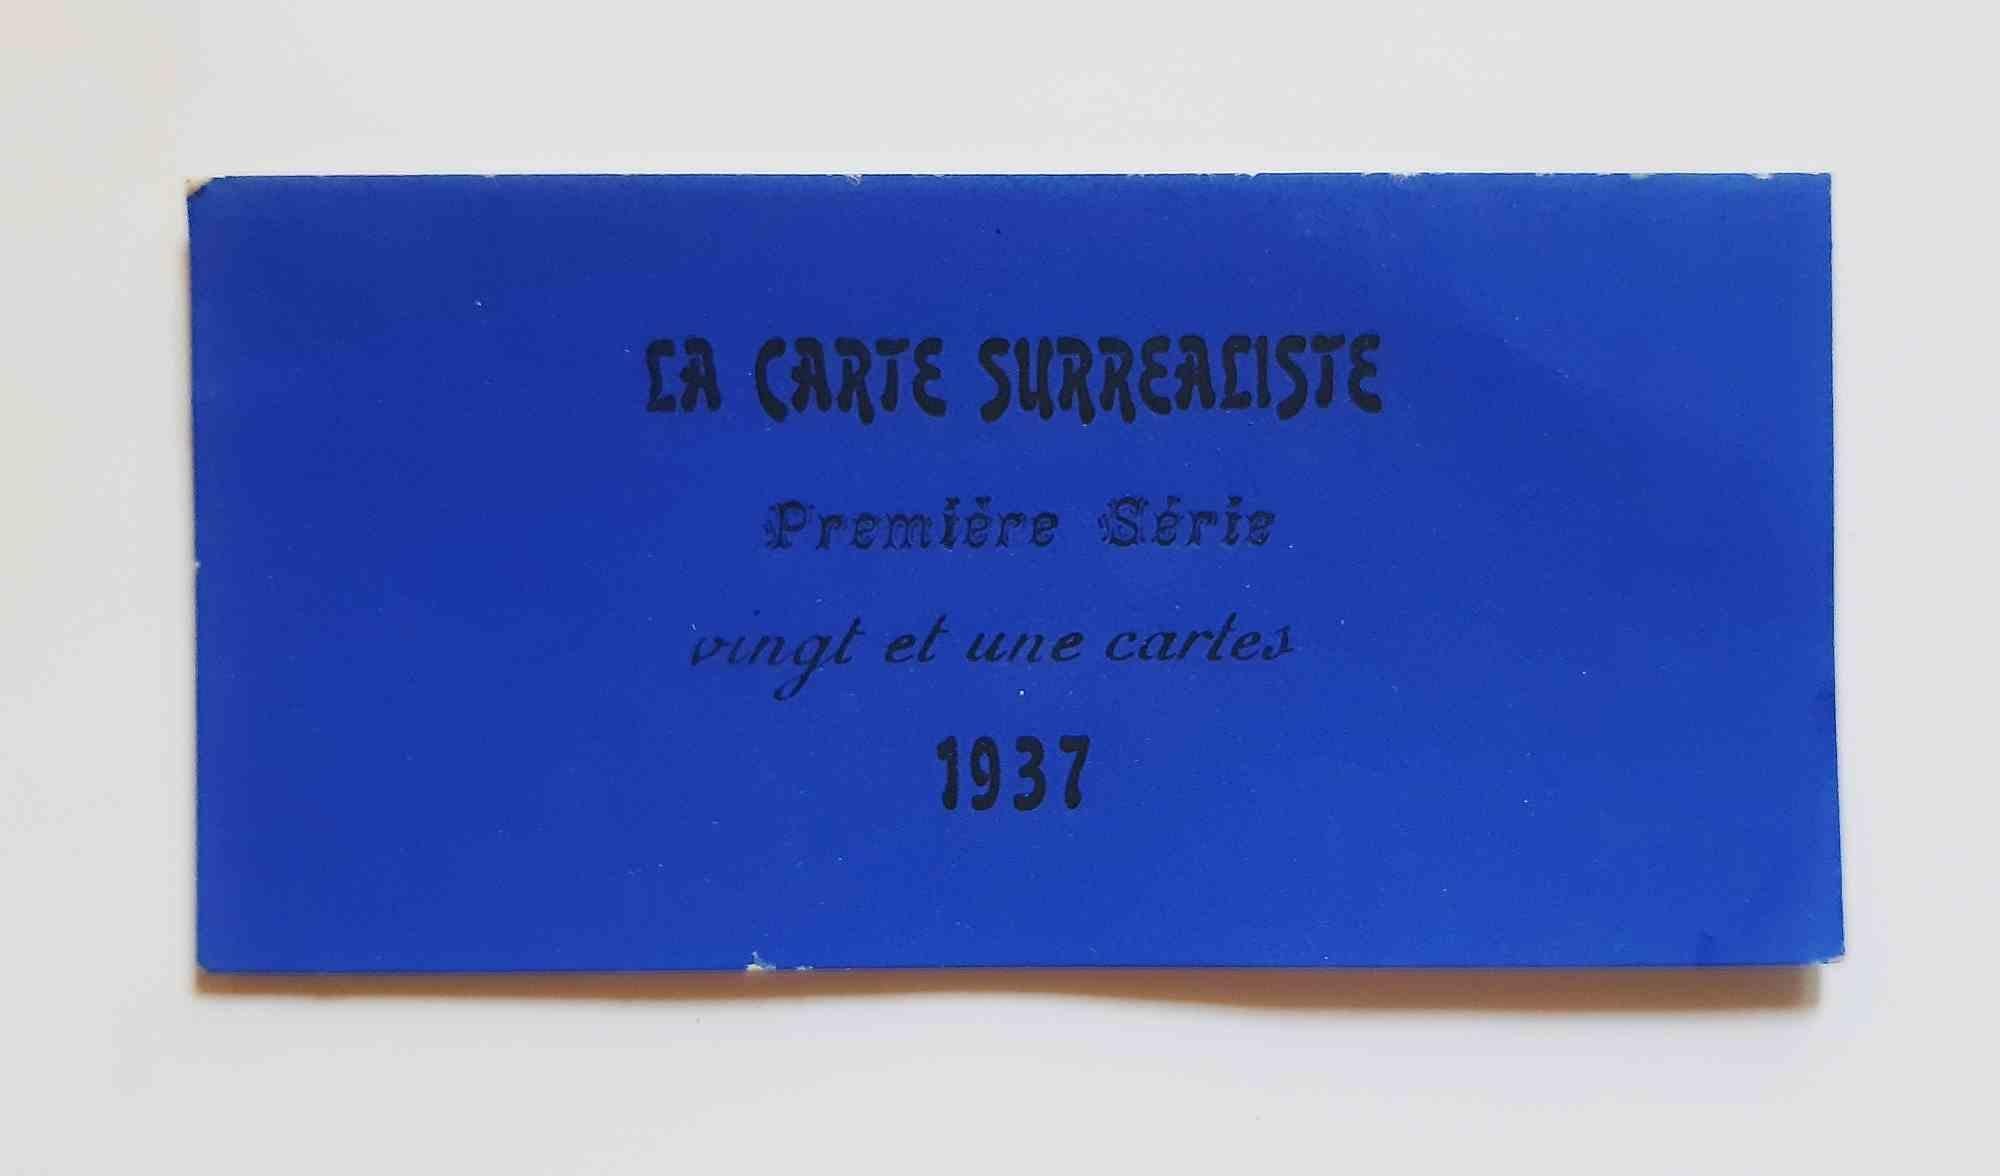 La Carte Surréaliste. Première série. Vingt et une cartes – 1937 – Print von Visionaire (Various Artists)